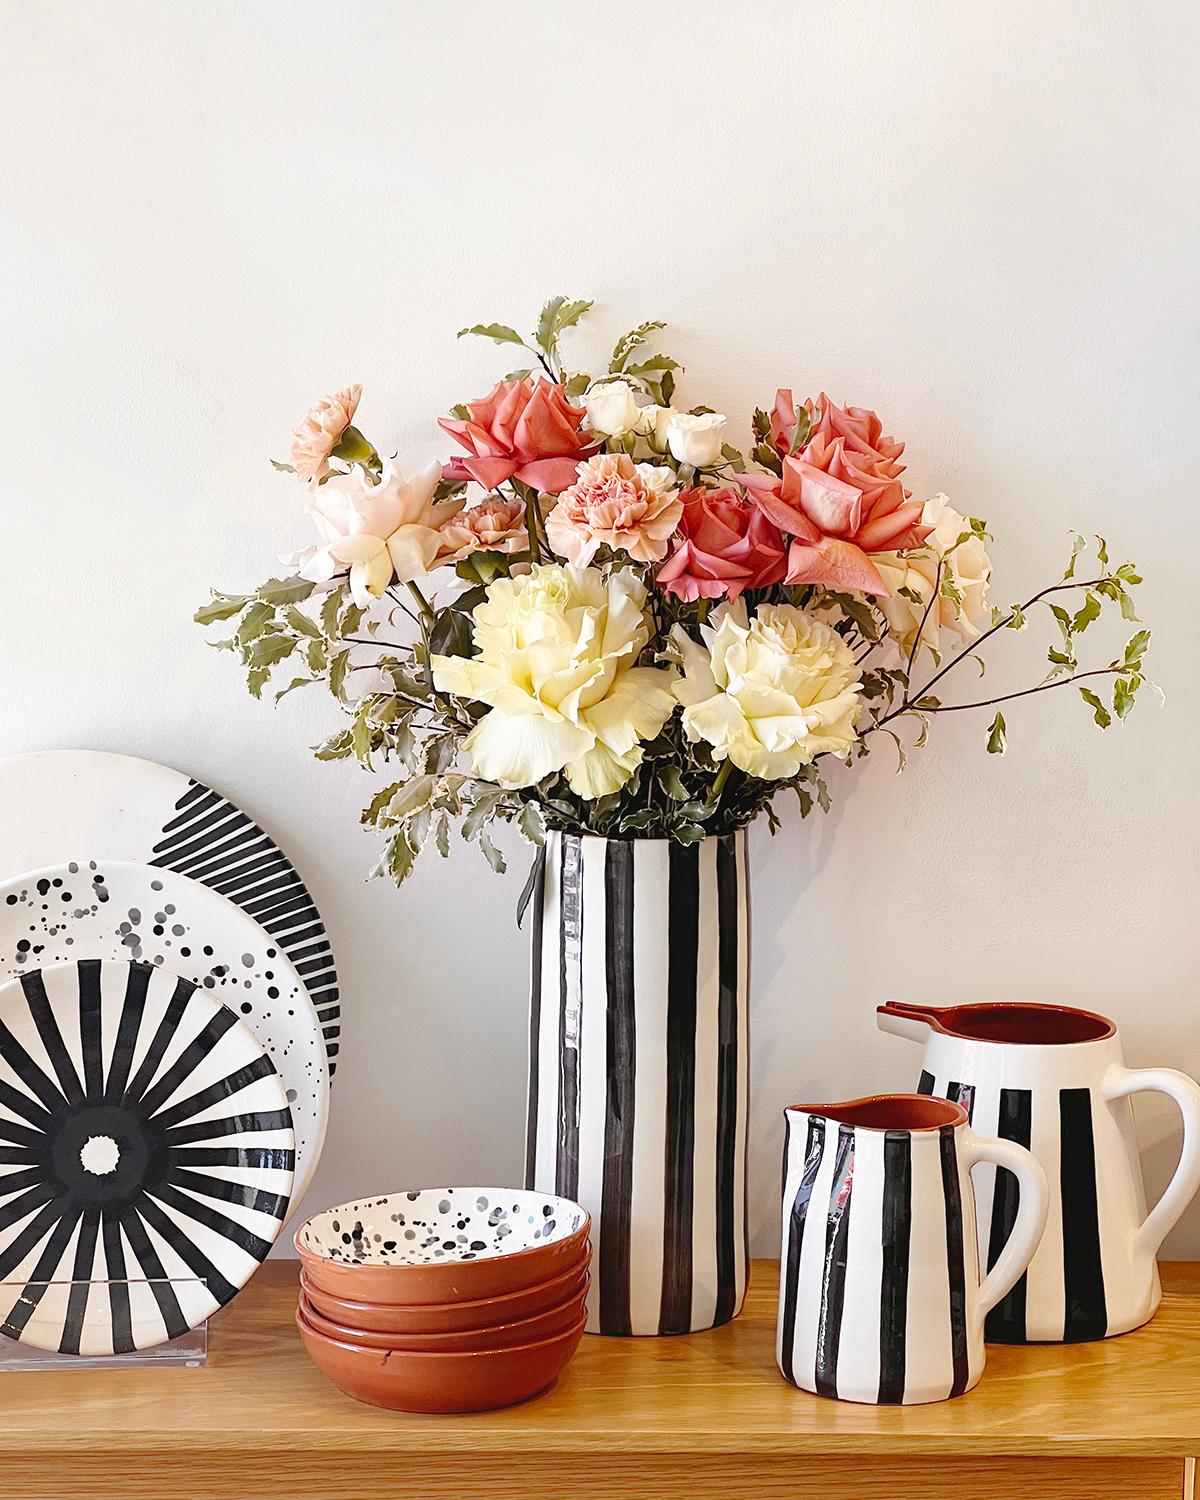 Un vase unique pour embellir votre intérieur. Ce vase Casa Cubista est une pièce artisanale de décoration intérieure fabriquée en terre cuite avec des rayures audacieuses noires et blanches. Fabriqué à la main en Europe, ce vase issu du commerce